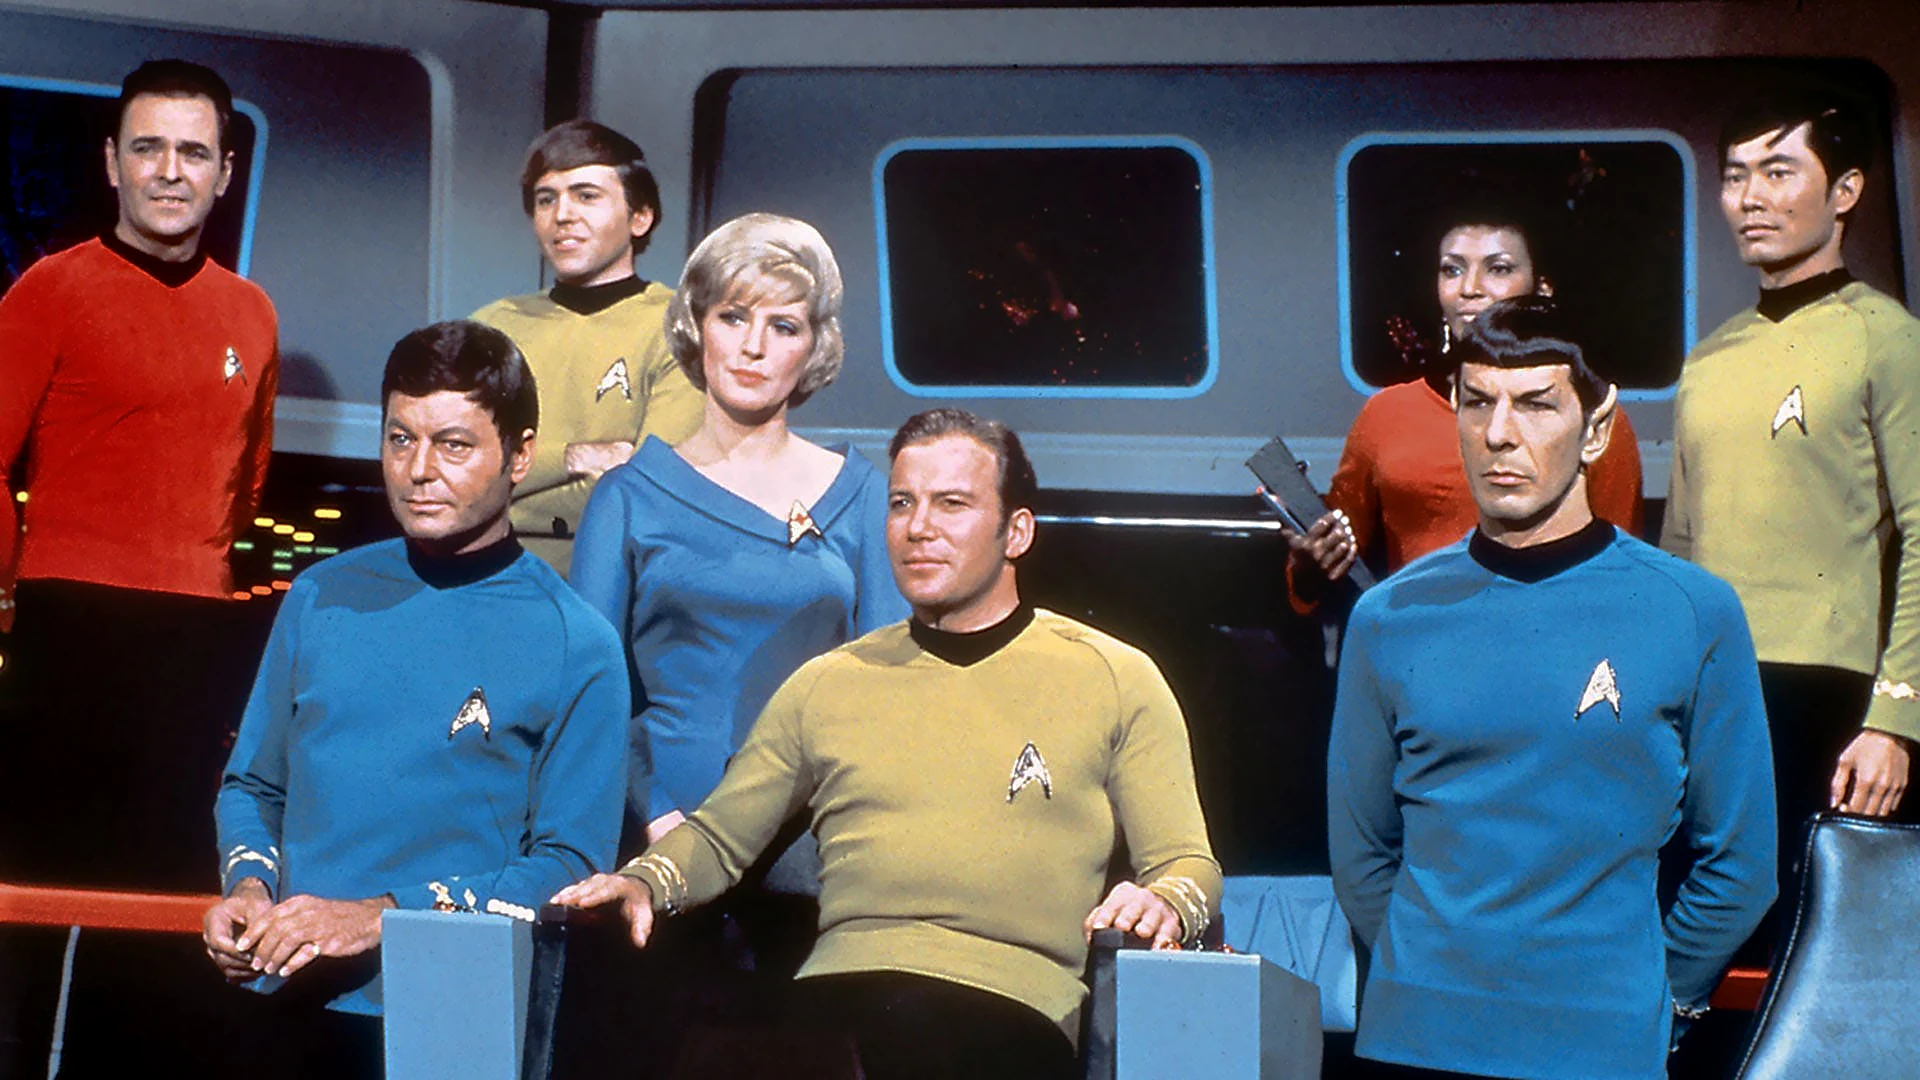 The Original Star Trek Lasted on 3 Seasons